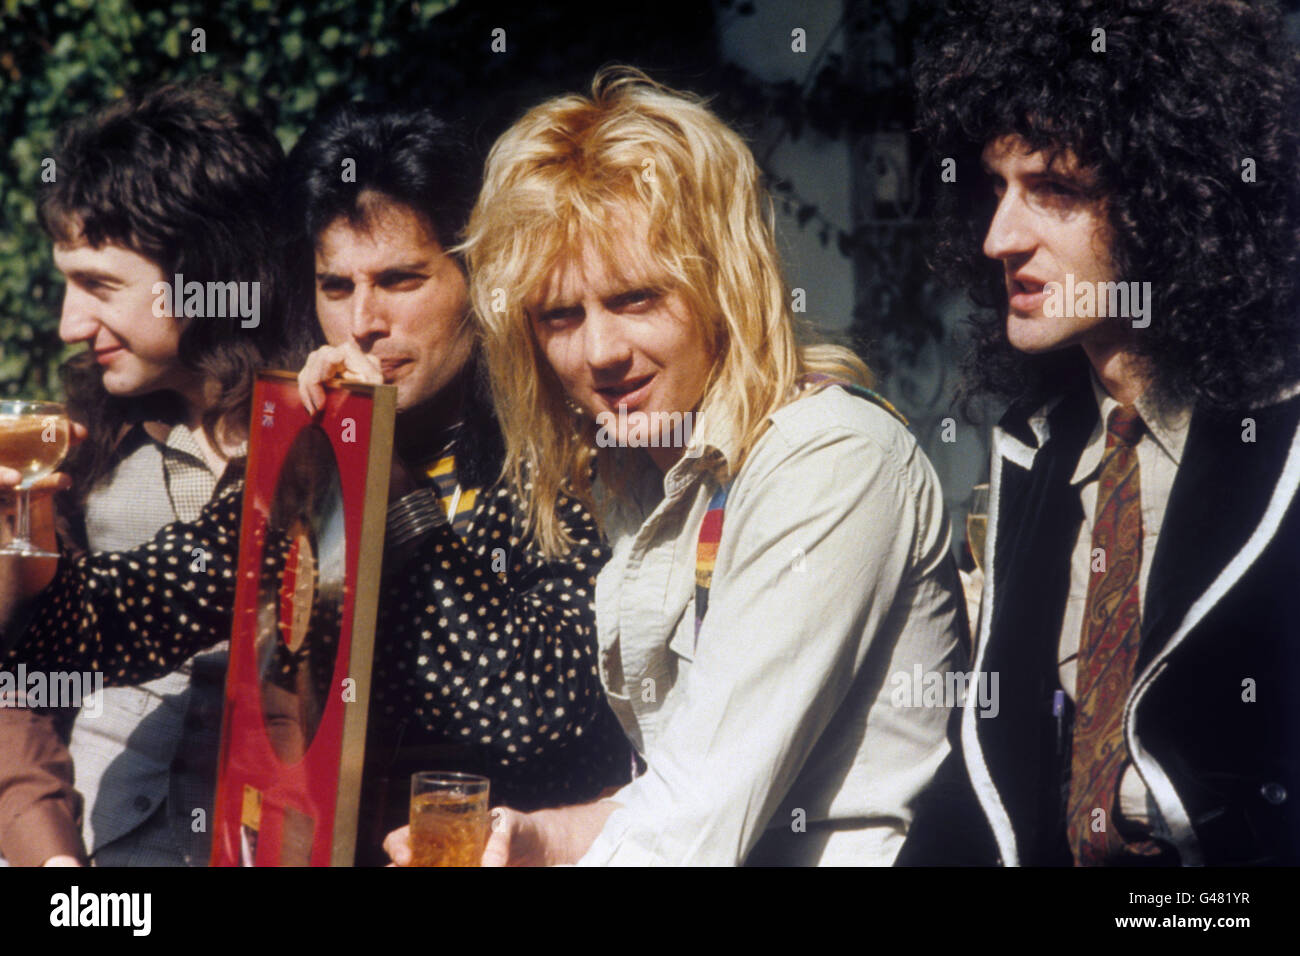 La banda de rock 'Queen' en Londres recibirá un premio Platinum , Gold y  Silver del British Phonographic Institute por sus ventas discográficas.  (l-r) John Deacon, Freddie Mercury, Roger Taylor y Brian